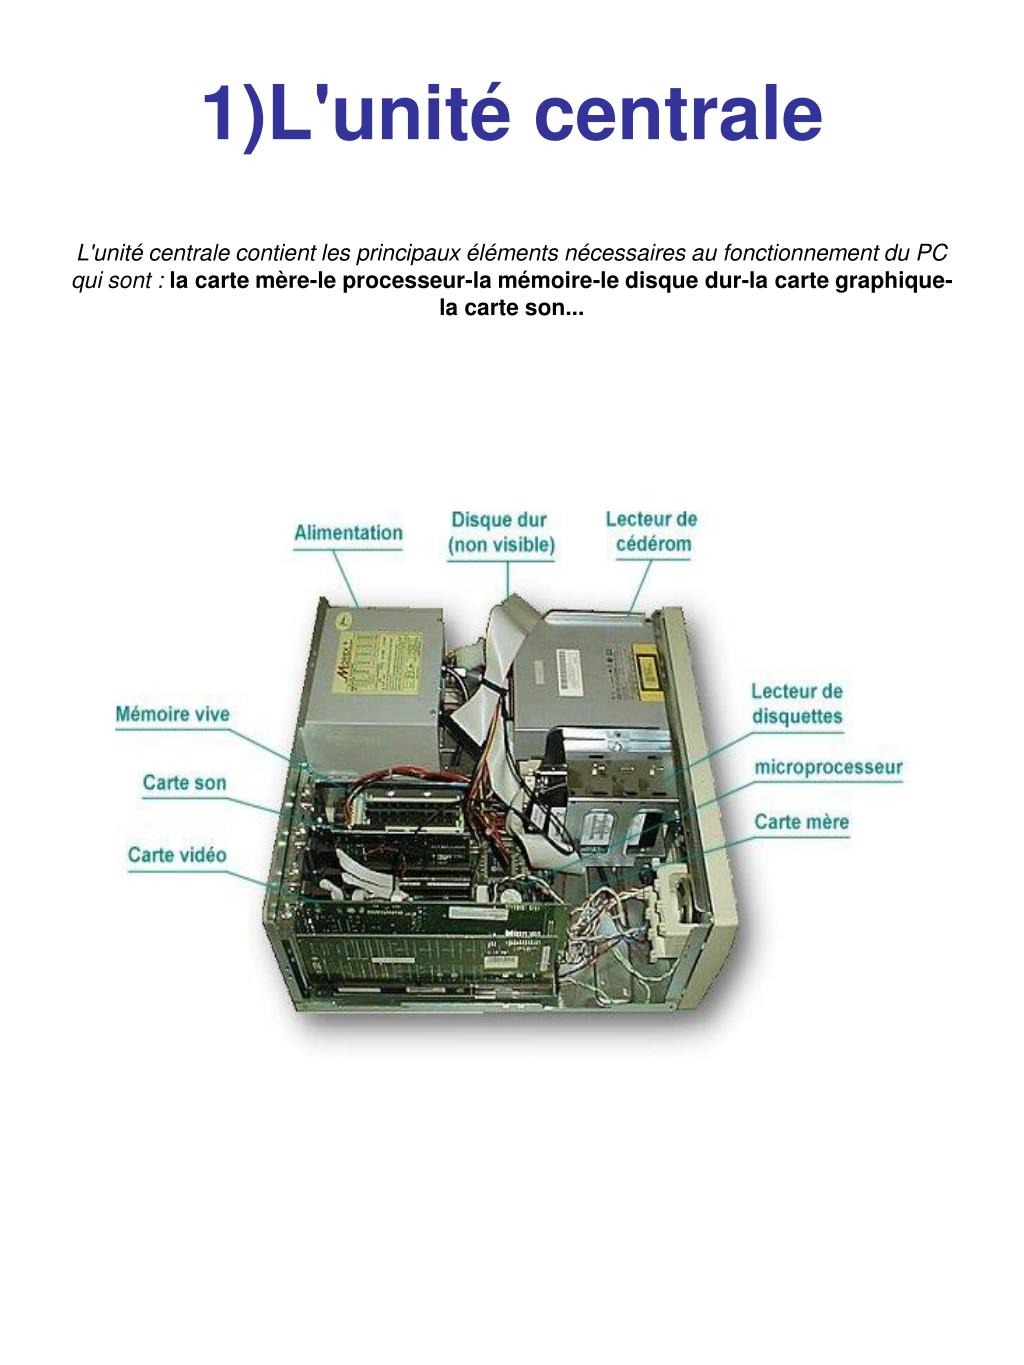 Description de l'unité centrale d'un ordinateur 